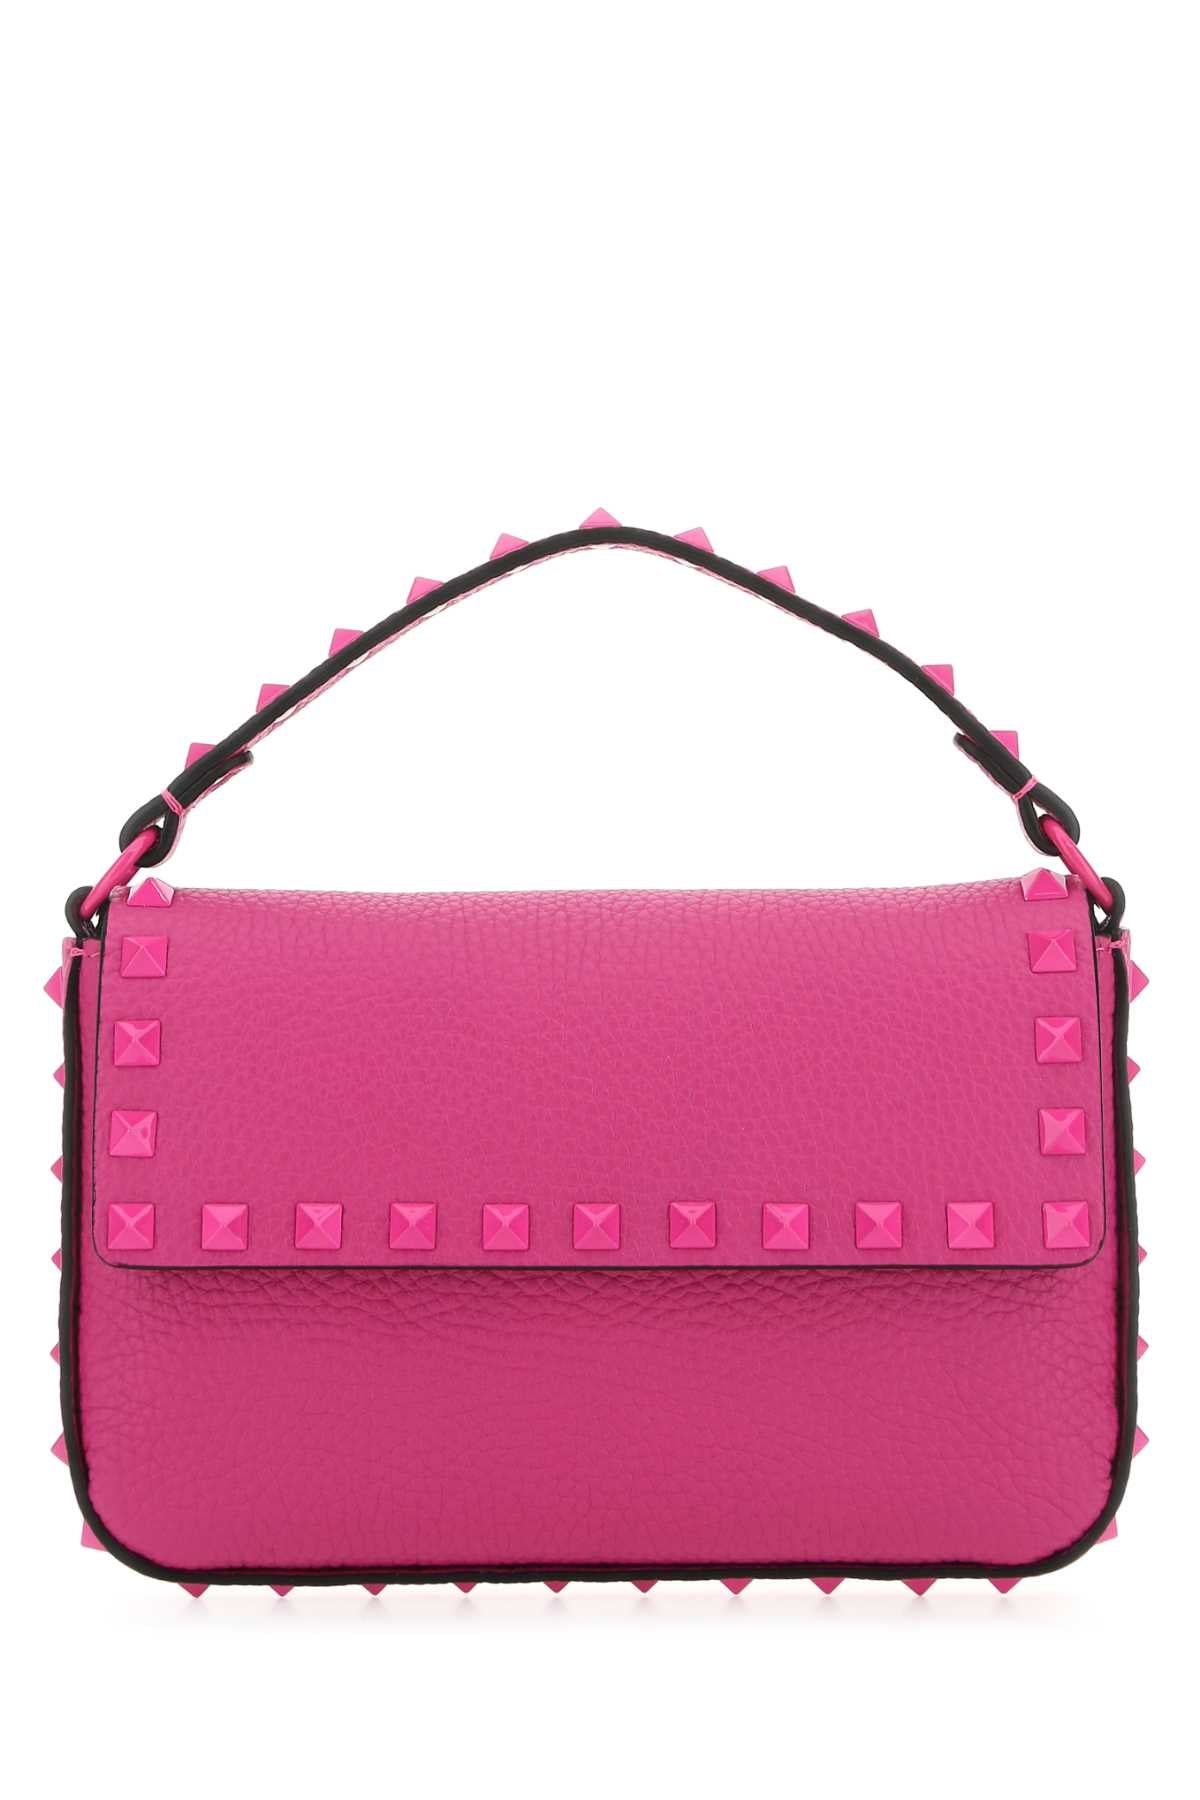 Rockstud Calfskin Pouch Crossbody Bag - Pink PP